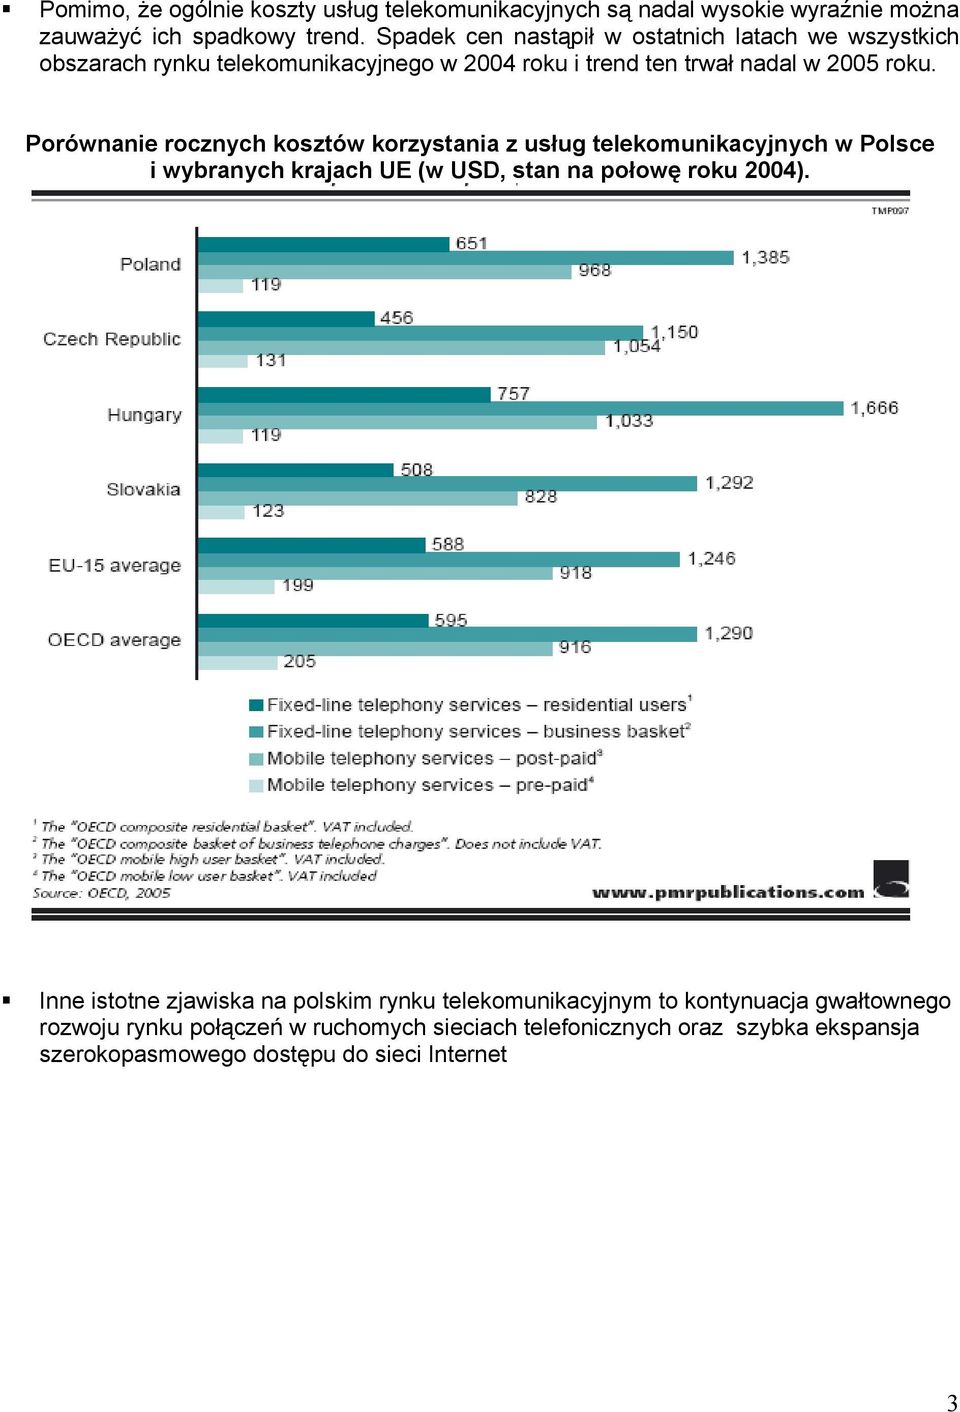 Porównanie rocznych kosztów korzystania z usług telekomunikacyjnych w Polsce i wybranych krajach UE (w USD, stan na połowę roku 2004).